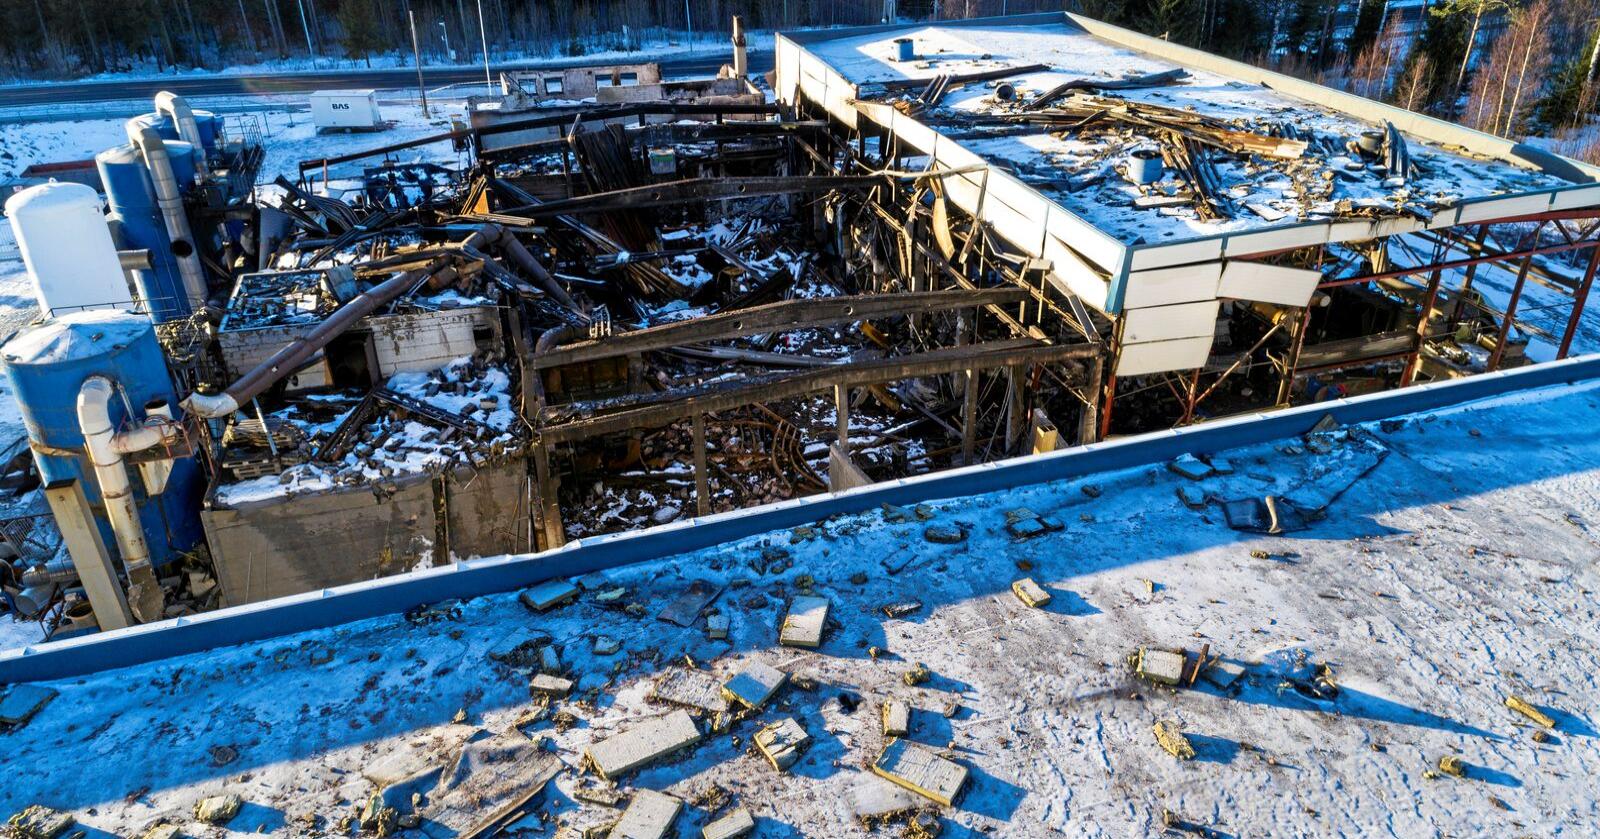 Kun ruiner er igjen av driftsbygningen hos Metallco på Eina. To personer mistet livet da det som trolig var en smeltekjele for metall eksploderte. Den kraftige eksplosjonen kastet metalldeler og betongbiter ut over et stort område.
Foto: Tore Meek / NTB